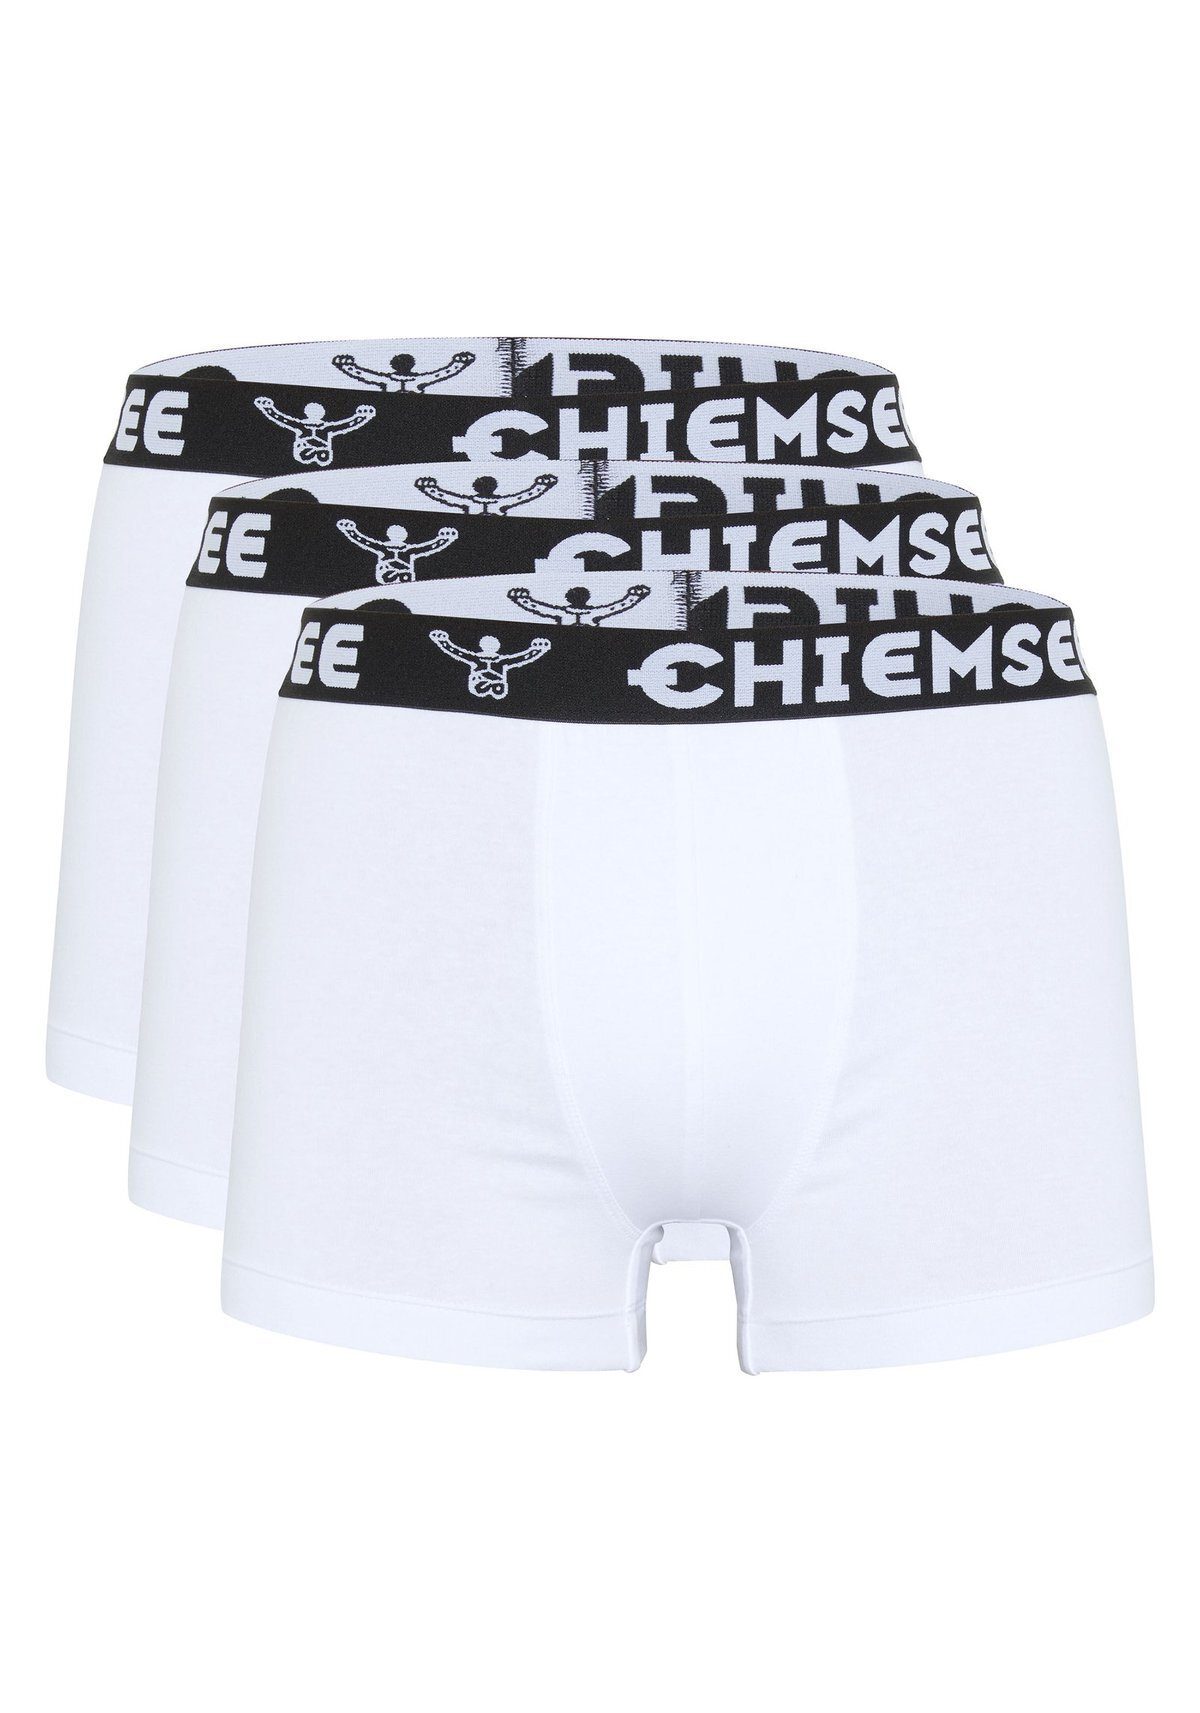 Chiemsee Boxer Herren Boxershorts, 3er Pack - Shorts, Logobund Weiß